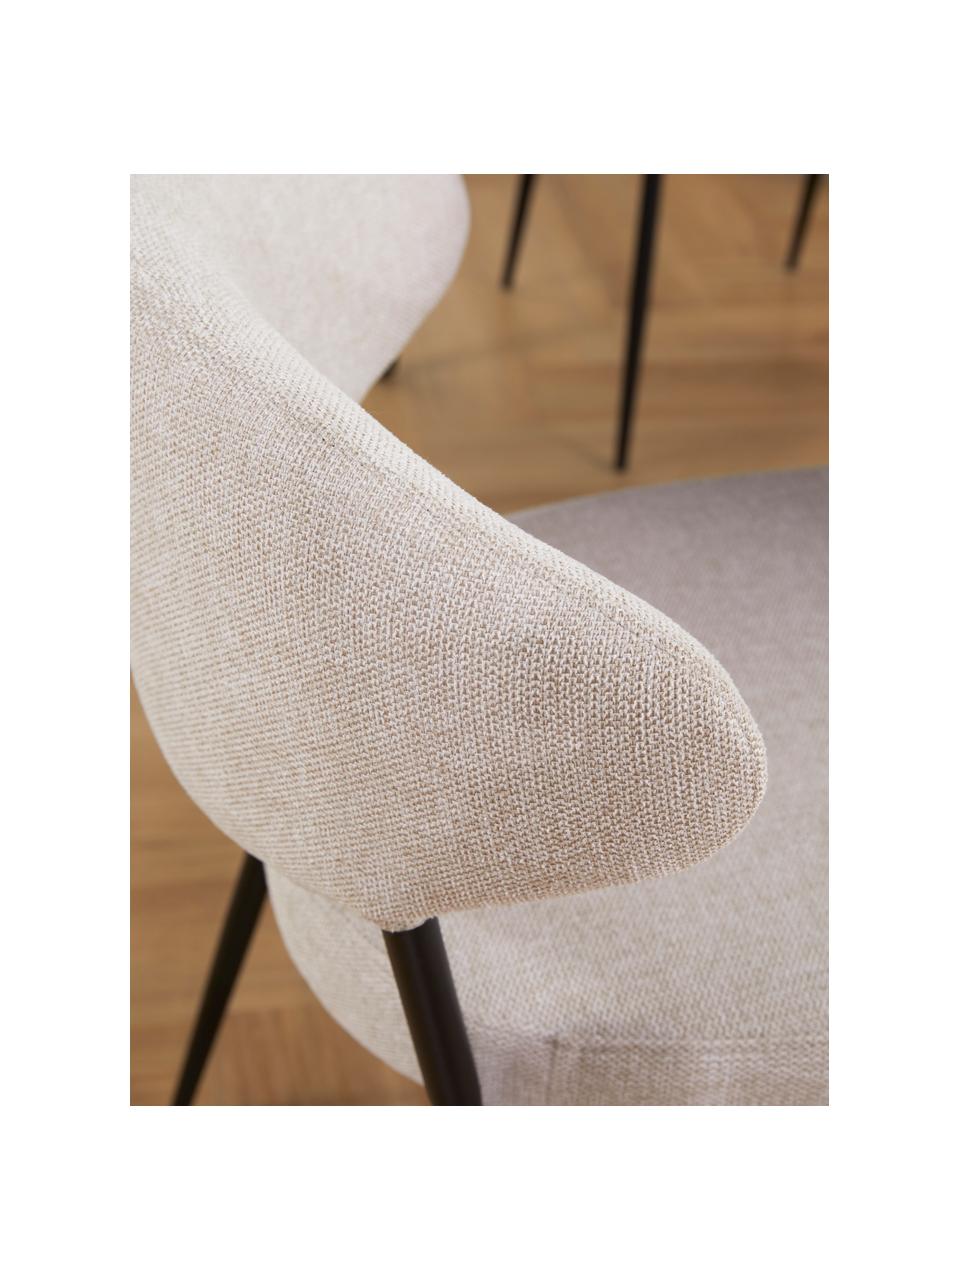 Gestoffeerde stoelen Adele in beige, 2 stuks, Frame: gepoedercoat metaal, Geweven stof beige, B 54 x H 57 cm